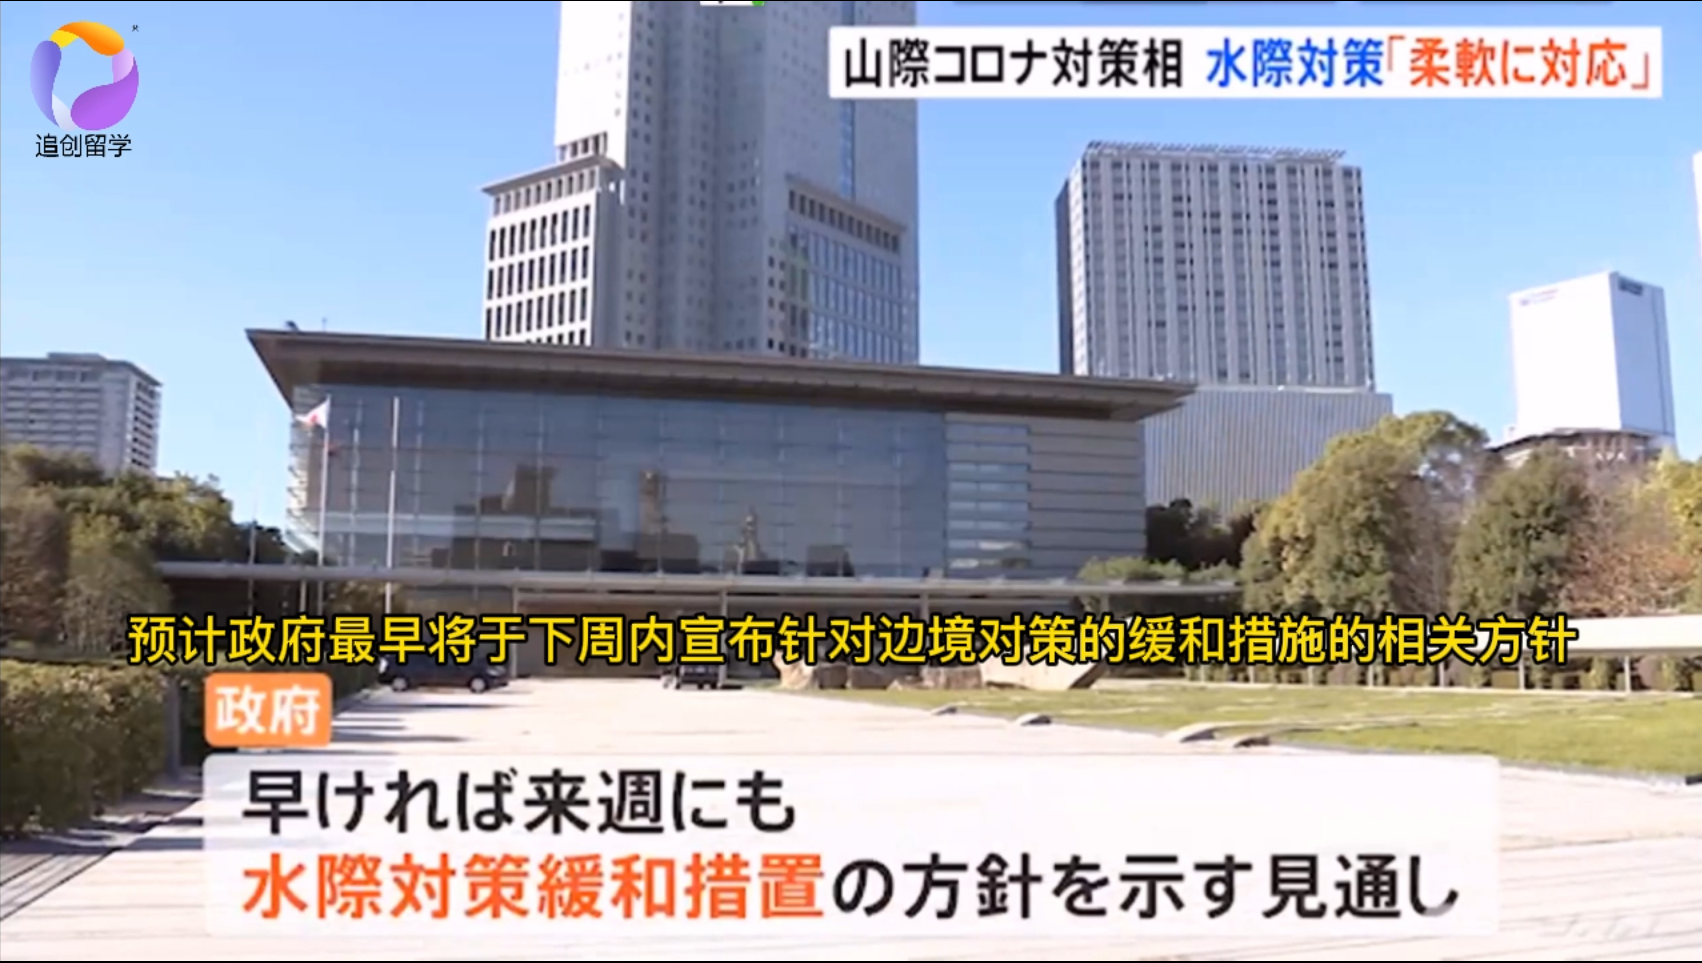 日本政府将积极研讨放宽入境政策